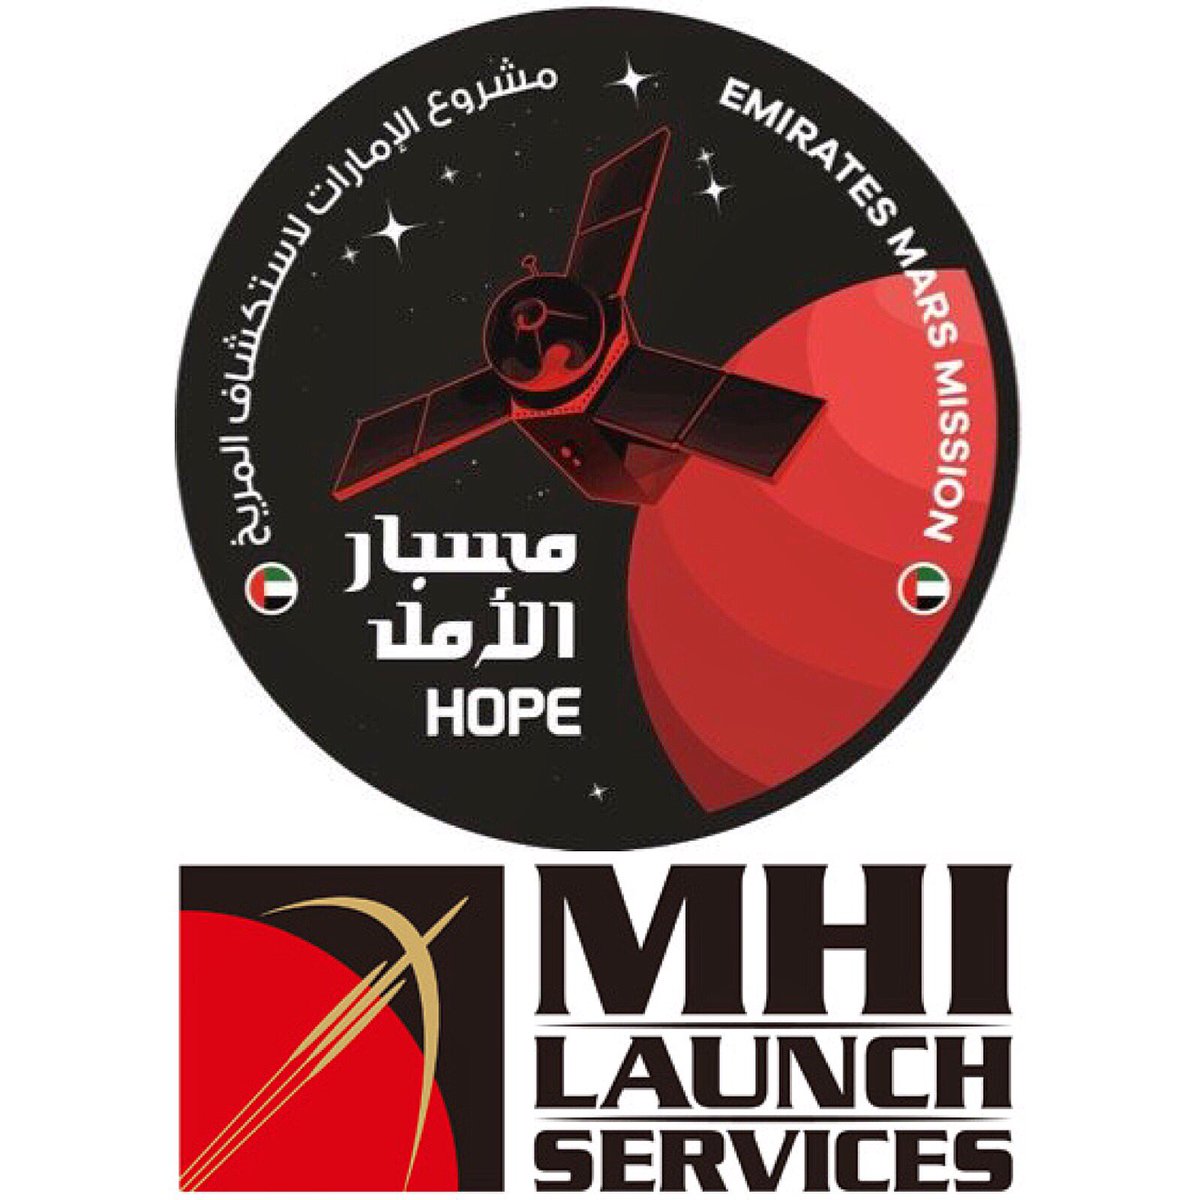 Hope Mars Mission on Twitter: "The #EmiratesMarsMission team would ...